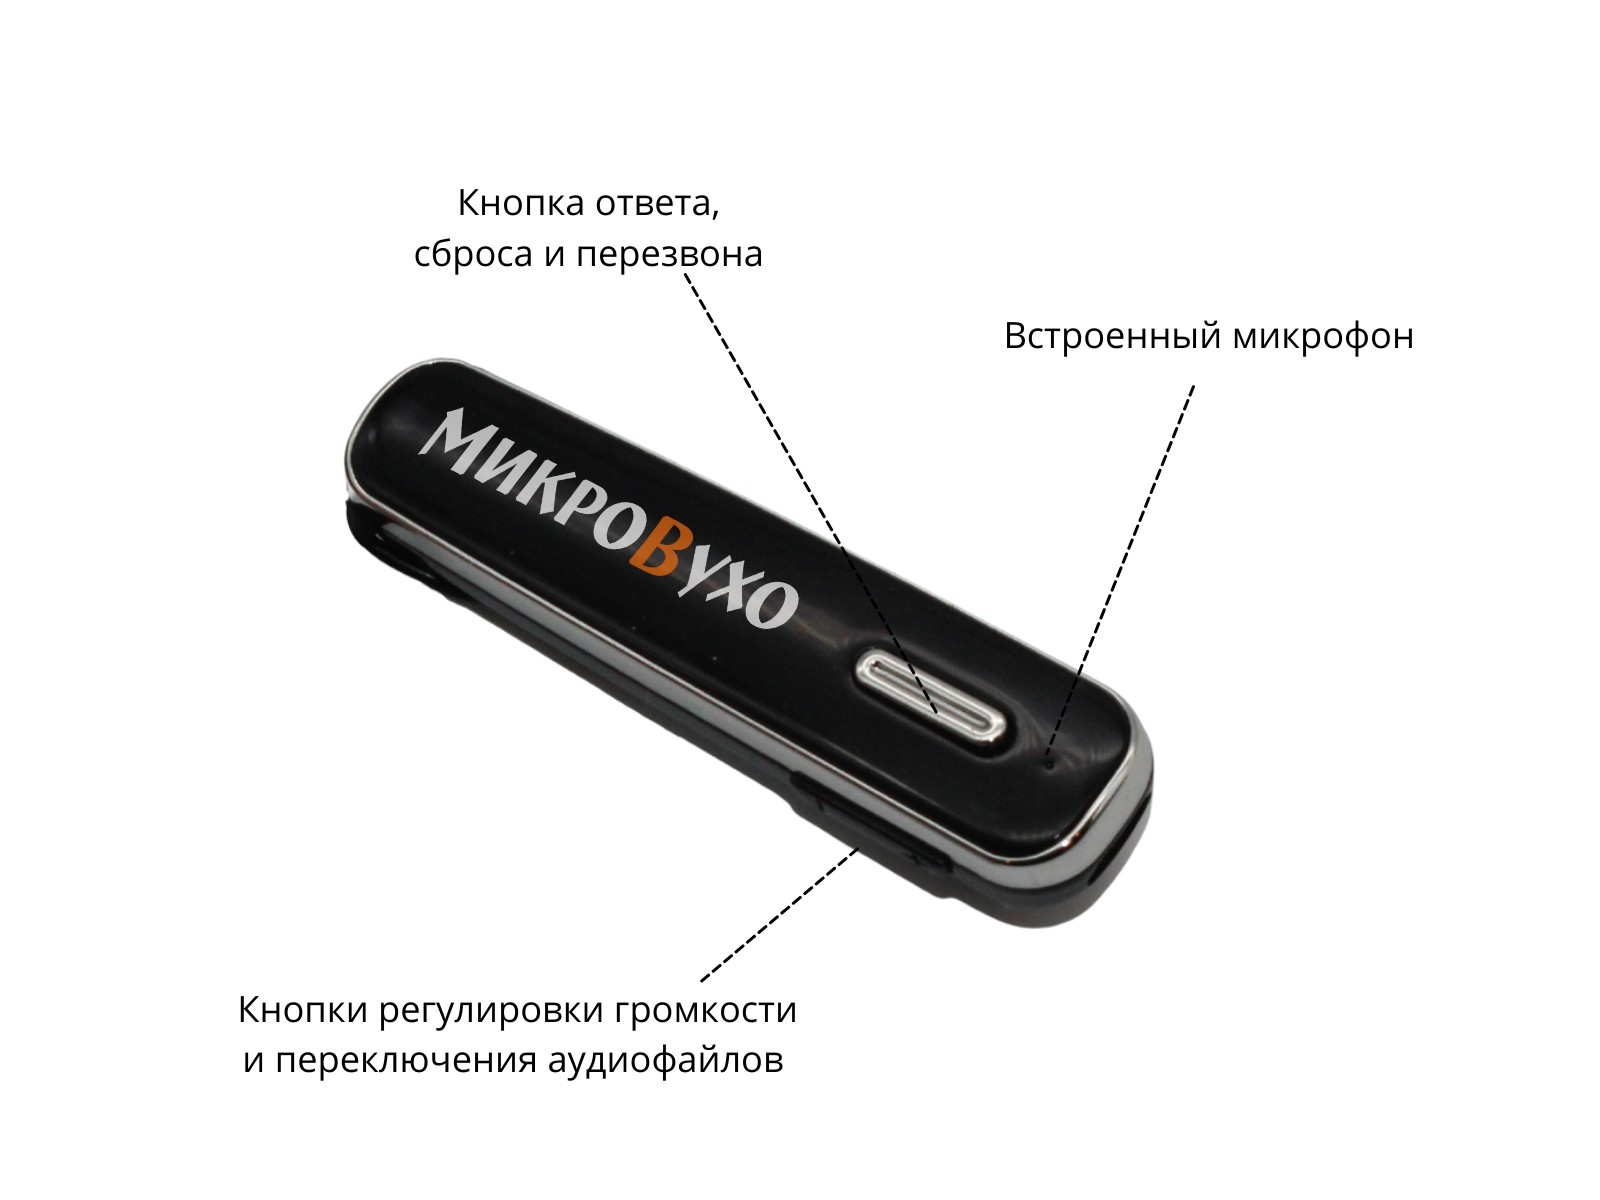 Гарнитура Bluetooth Box Premier Lite с капсульным микронаушником K5 4 мм 3